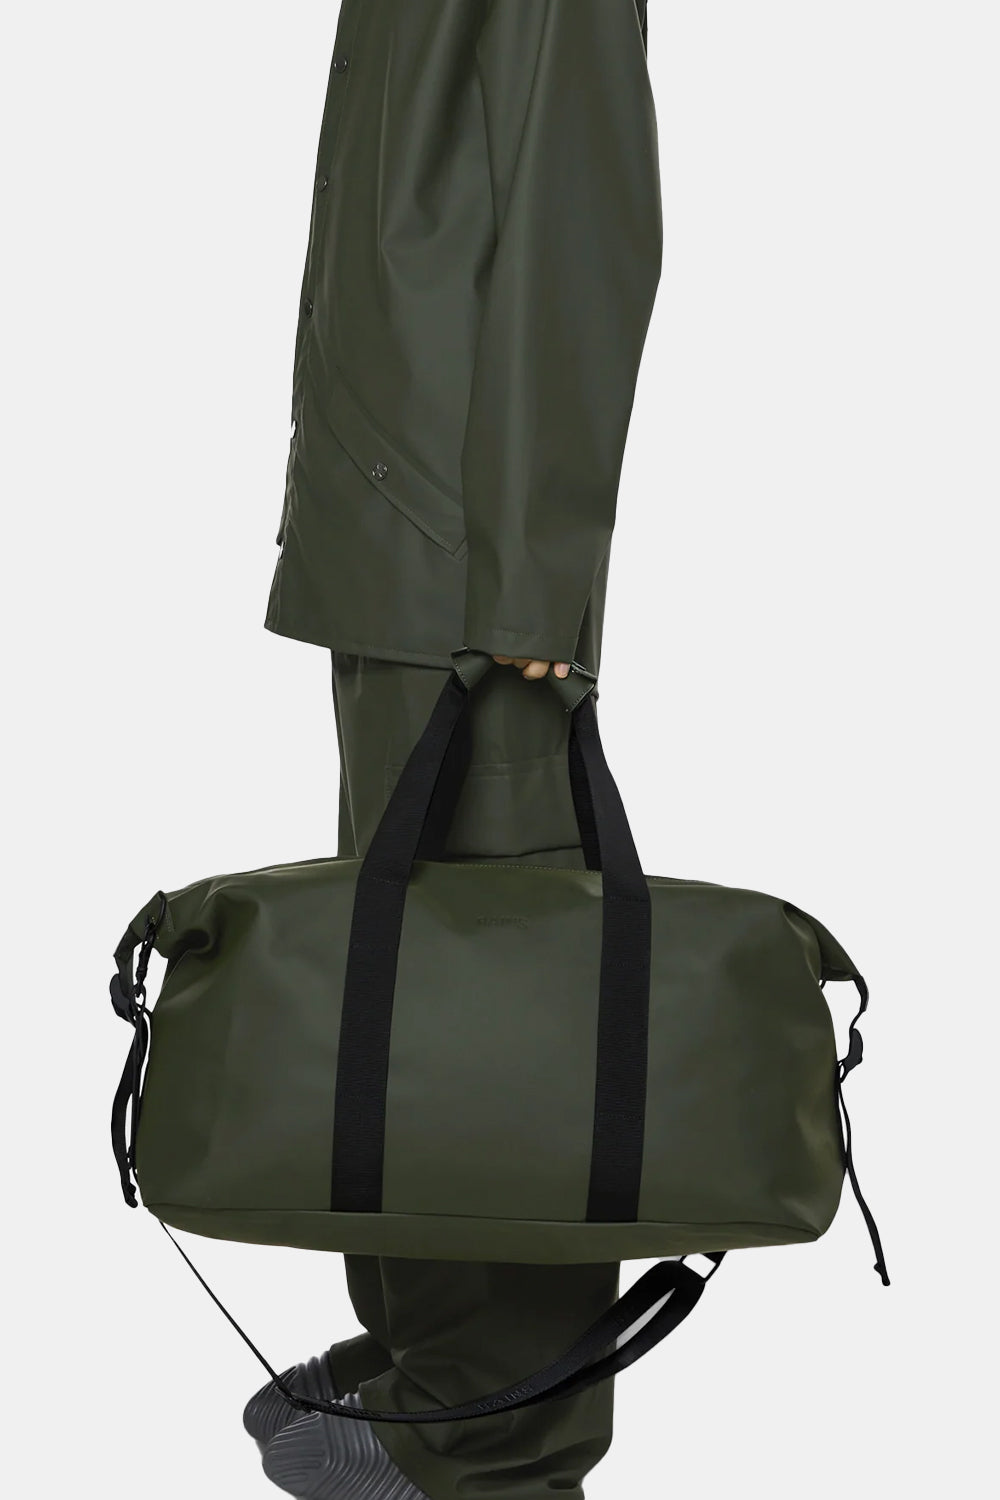 Rains Overnight Waterproof Weekend Bag (Green)